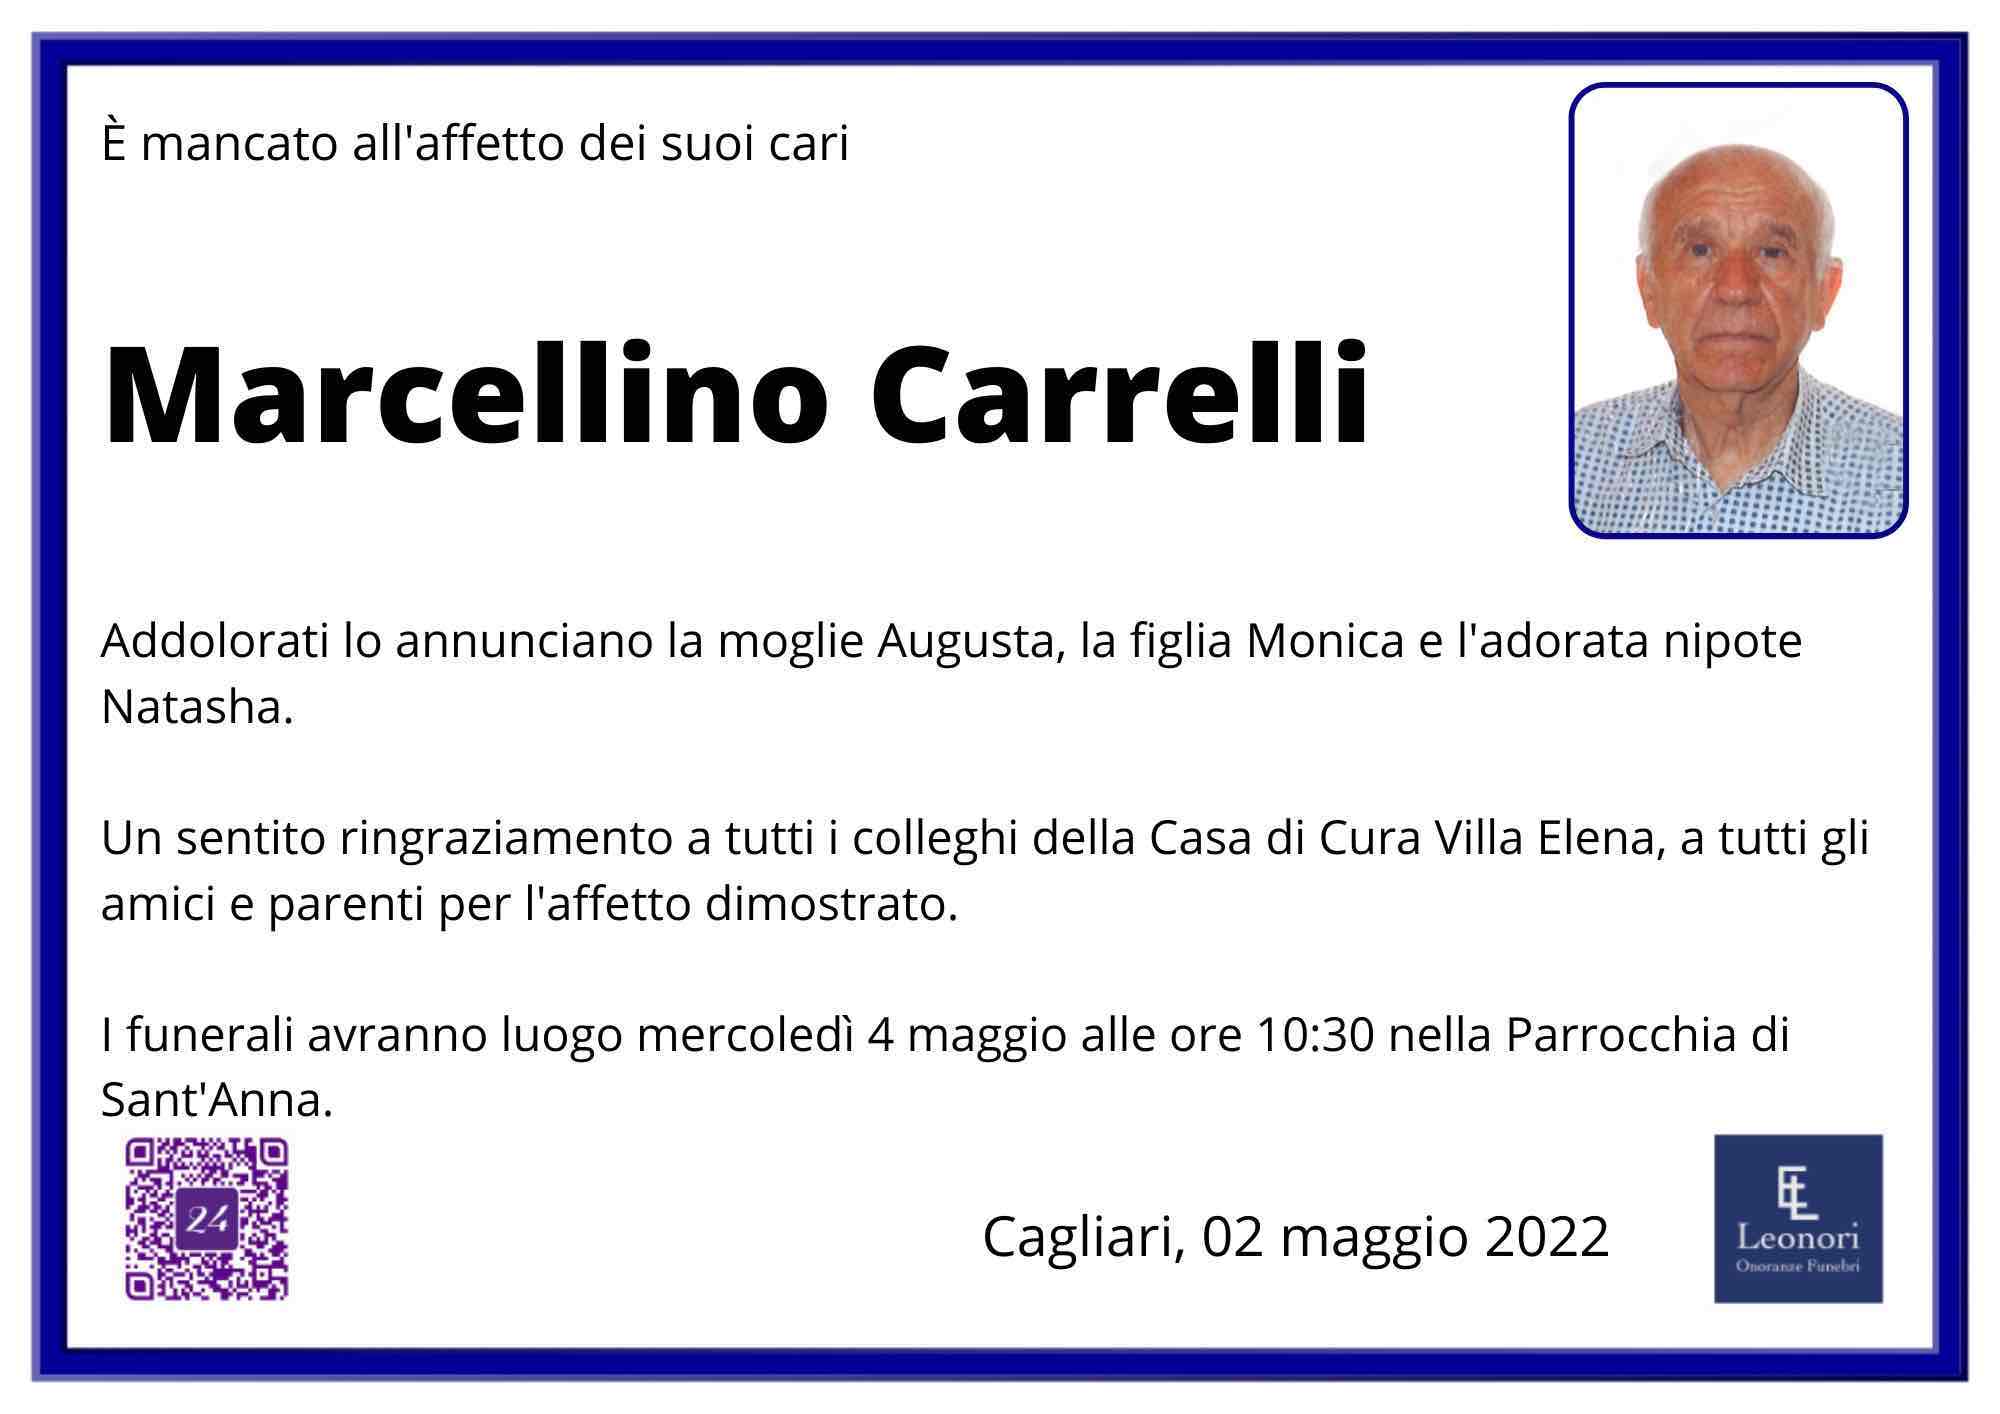 Marcellino Carrelli